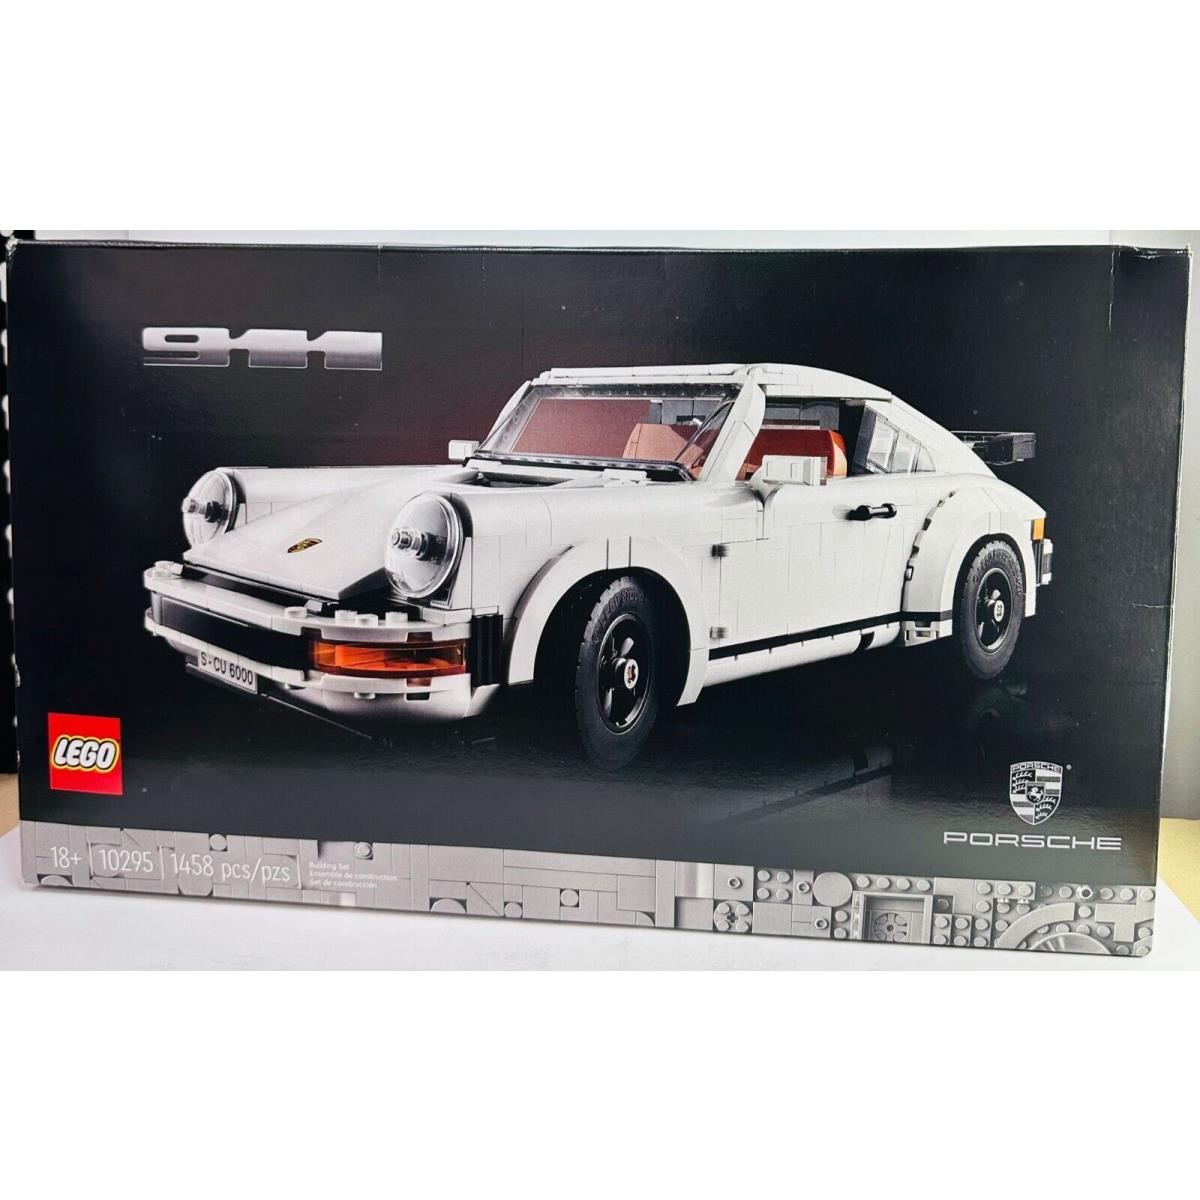 Lego 10295 Building Kit Porsche 911